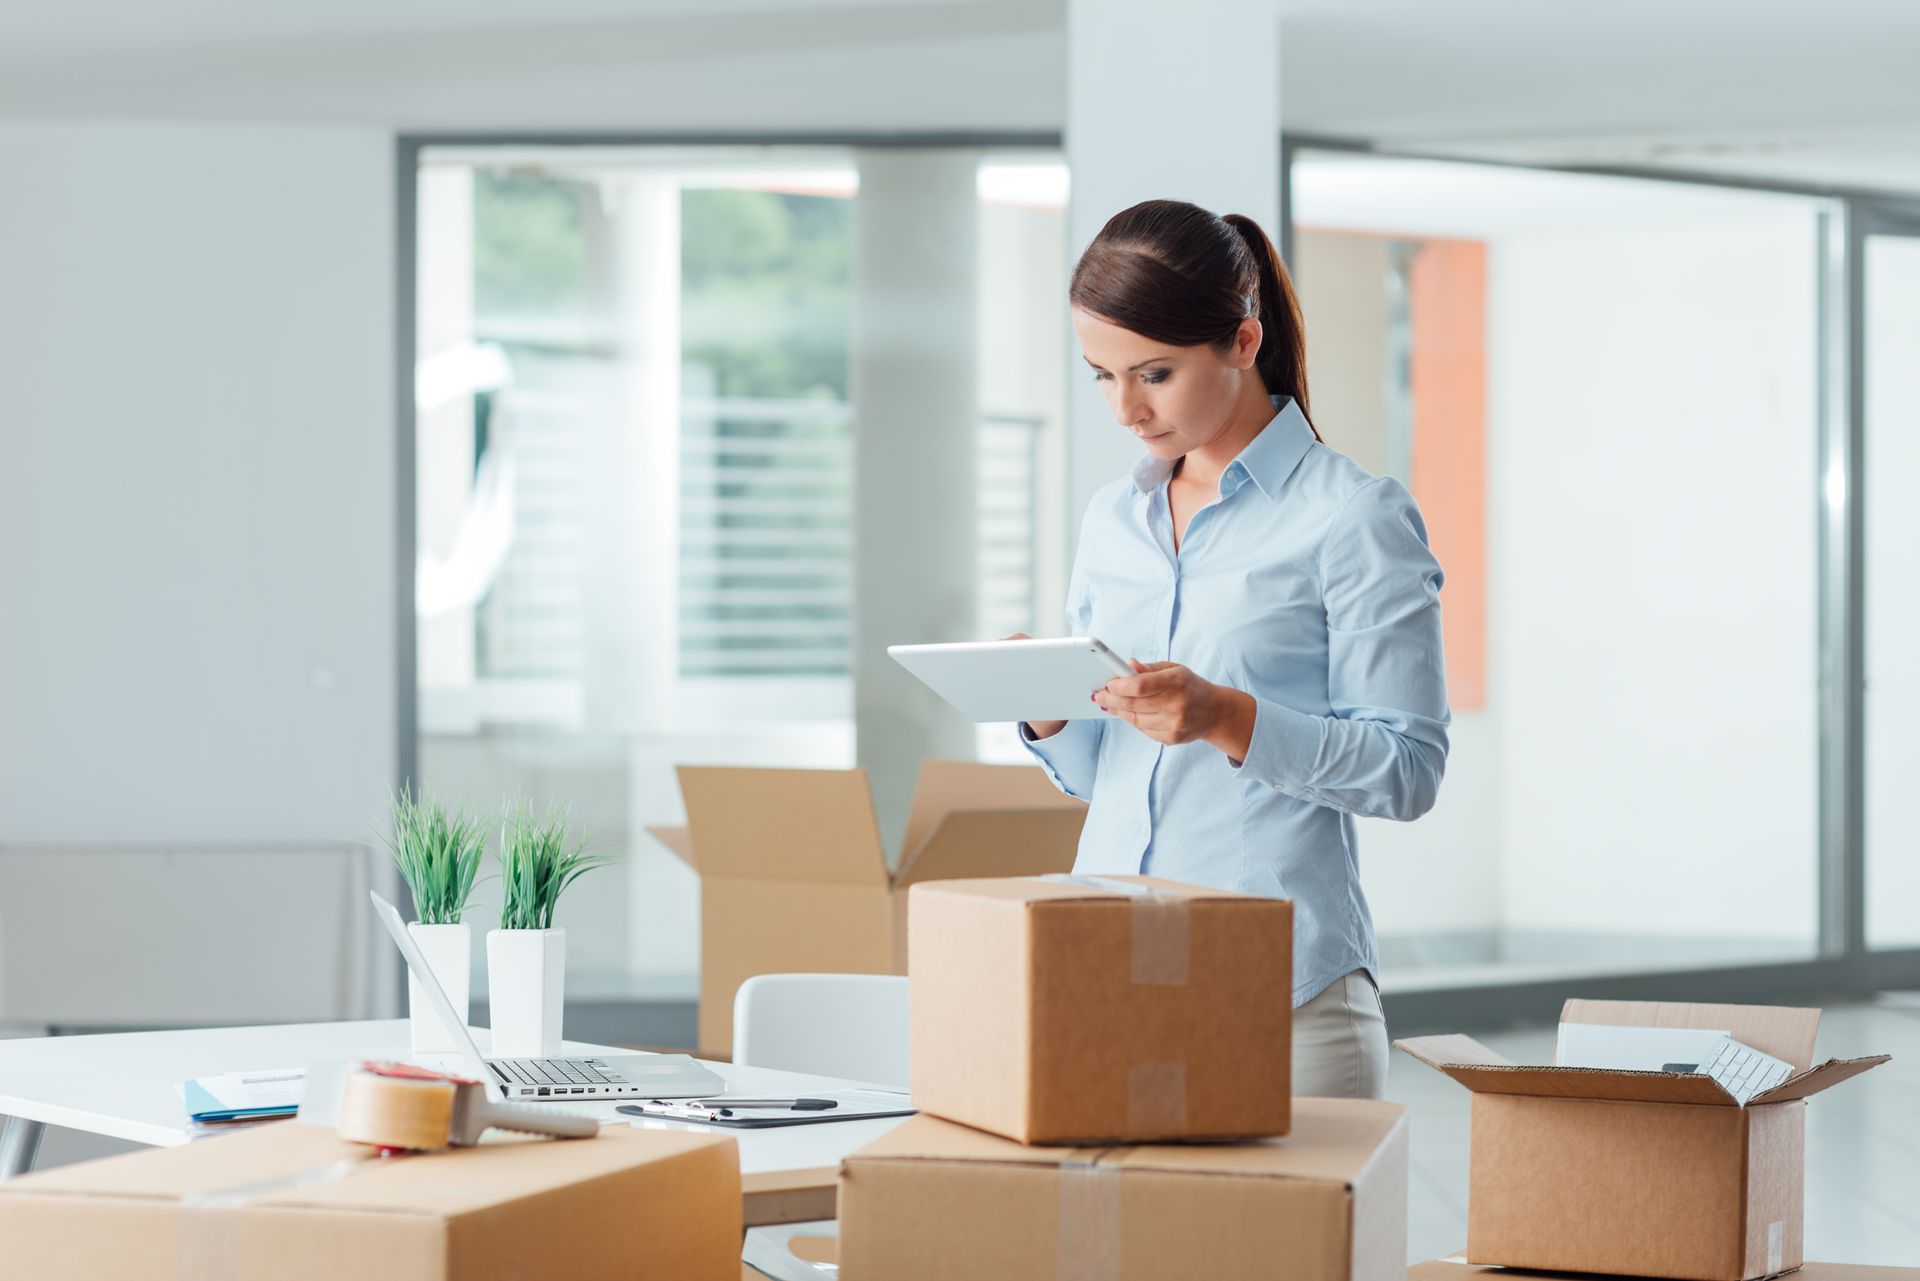 Une femme dans un bureau prépare des cartons pour un déménagement